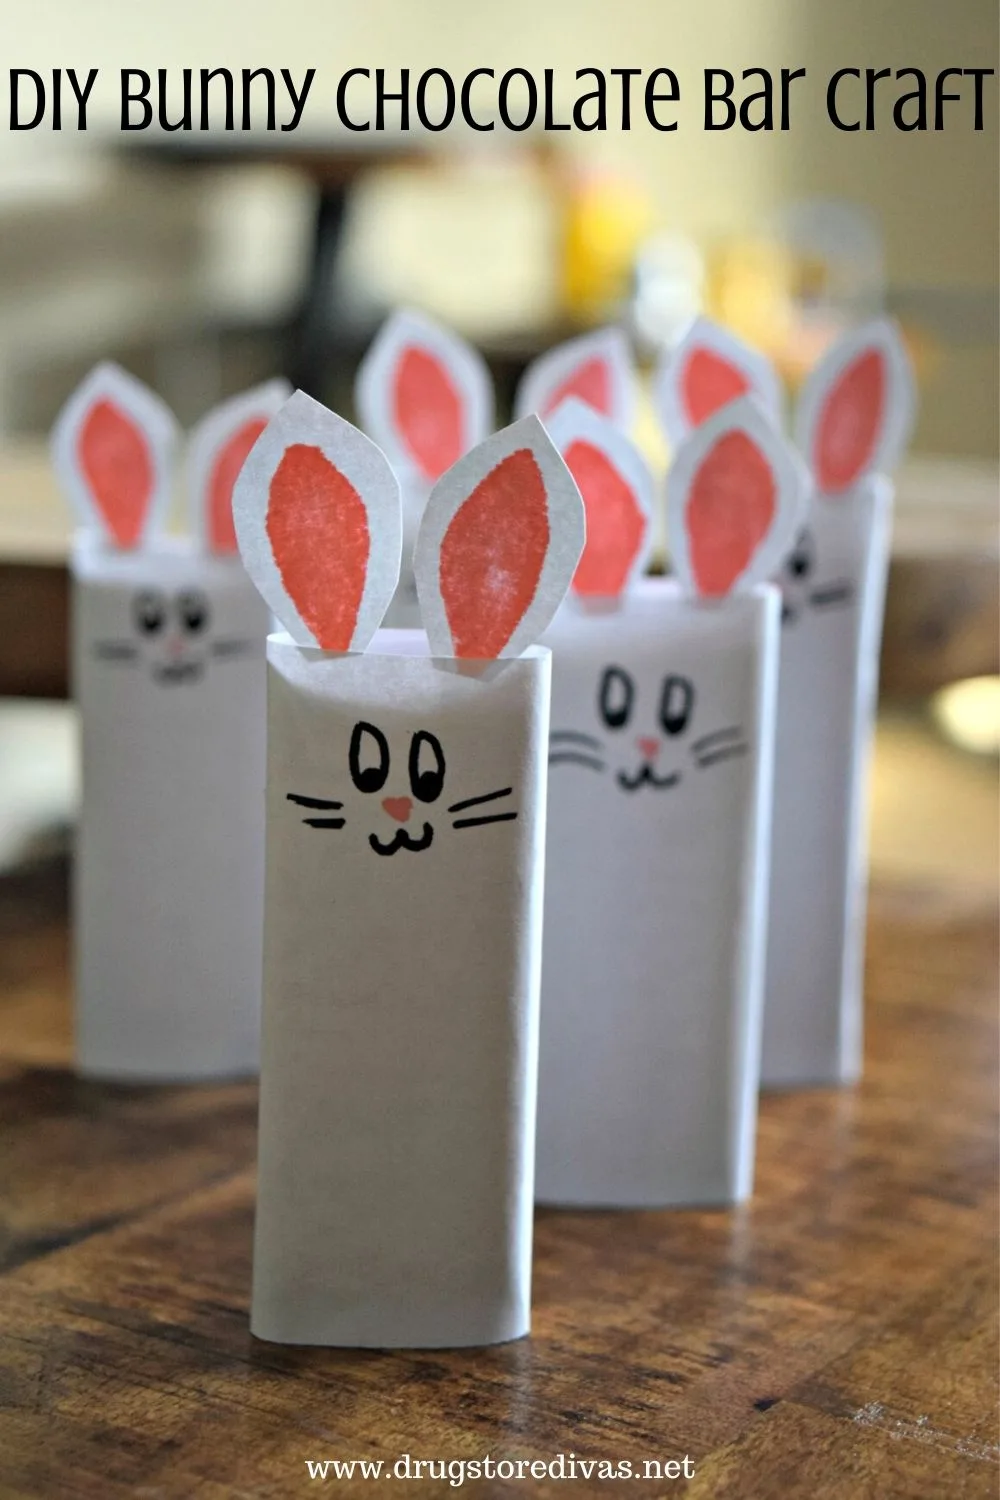 DIY Bunny Chocolate Bar Craft.